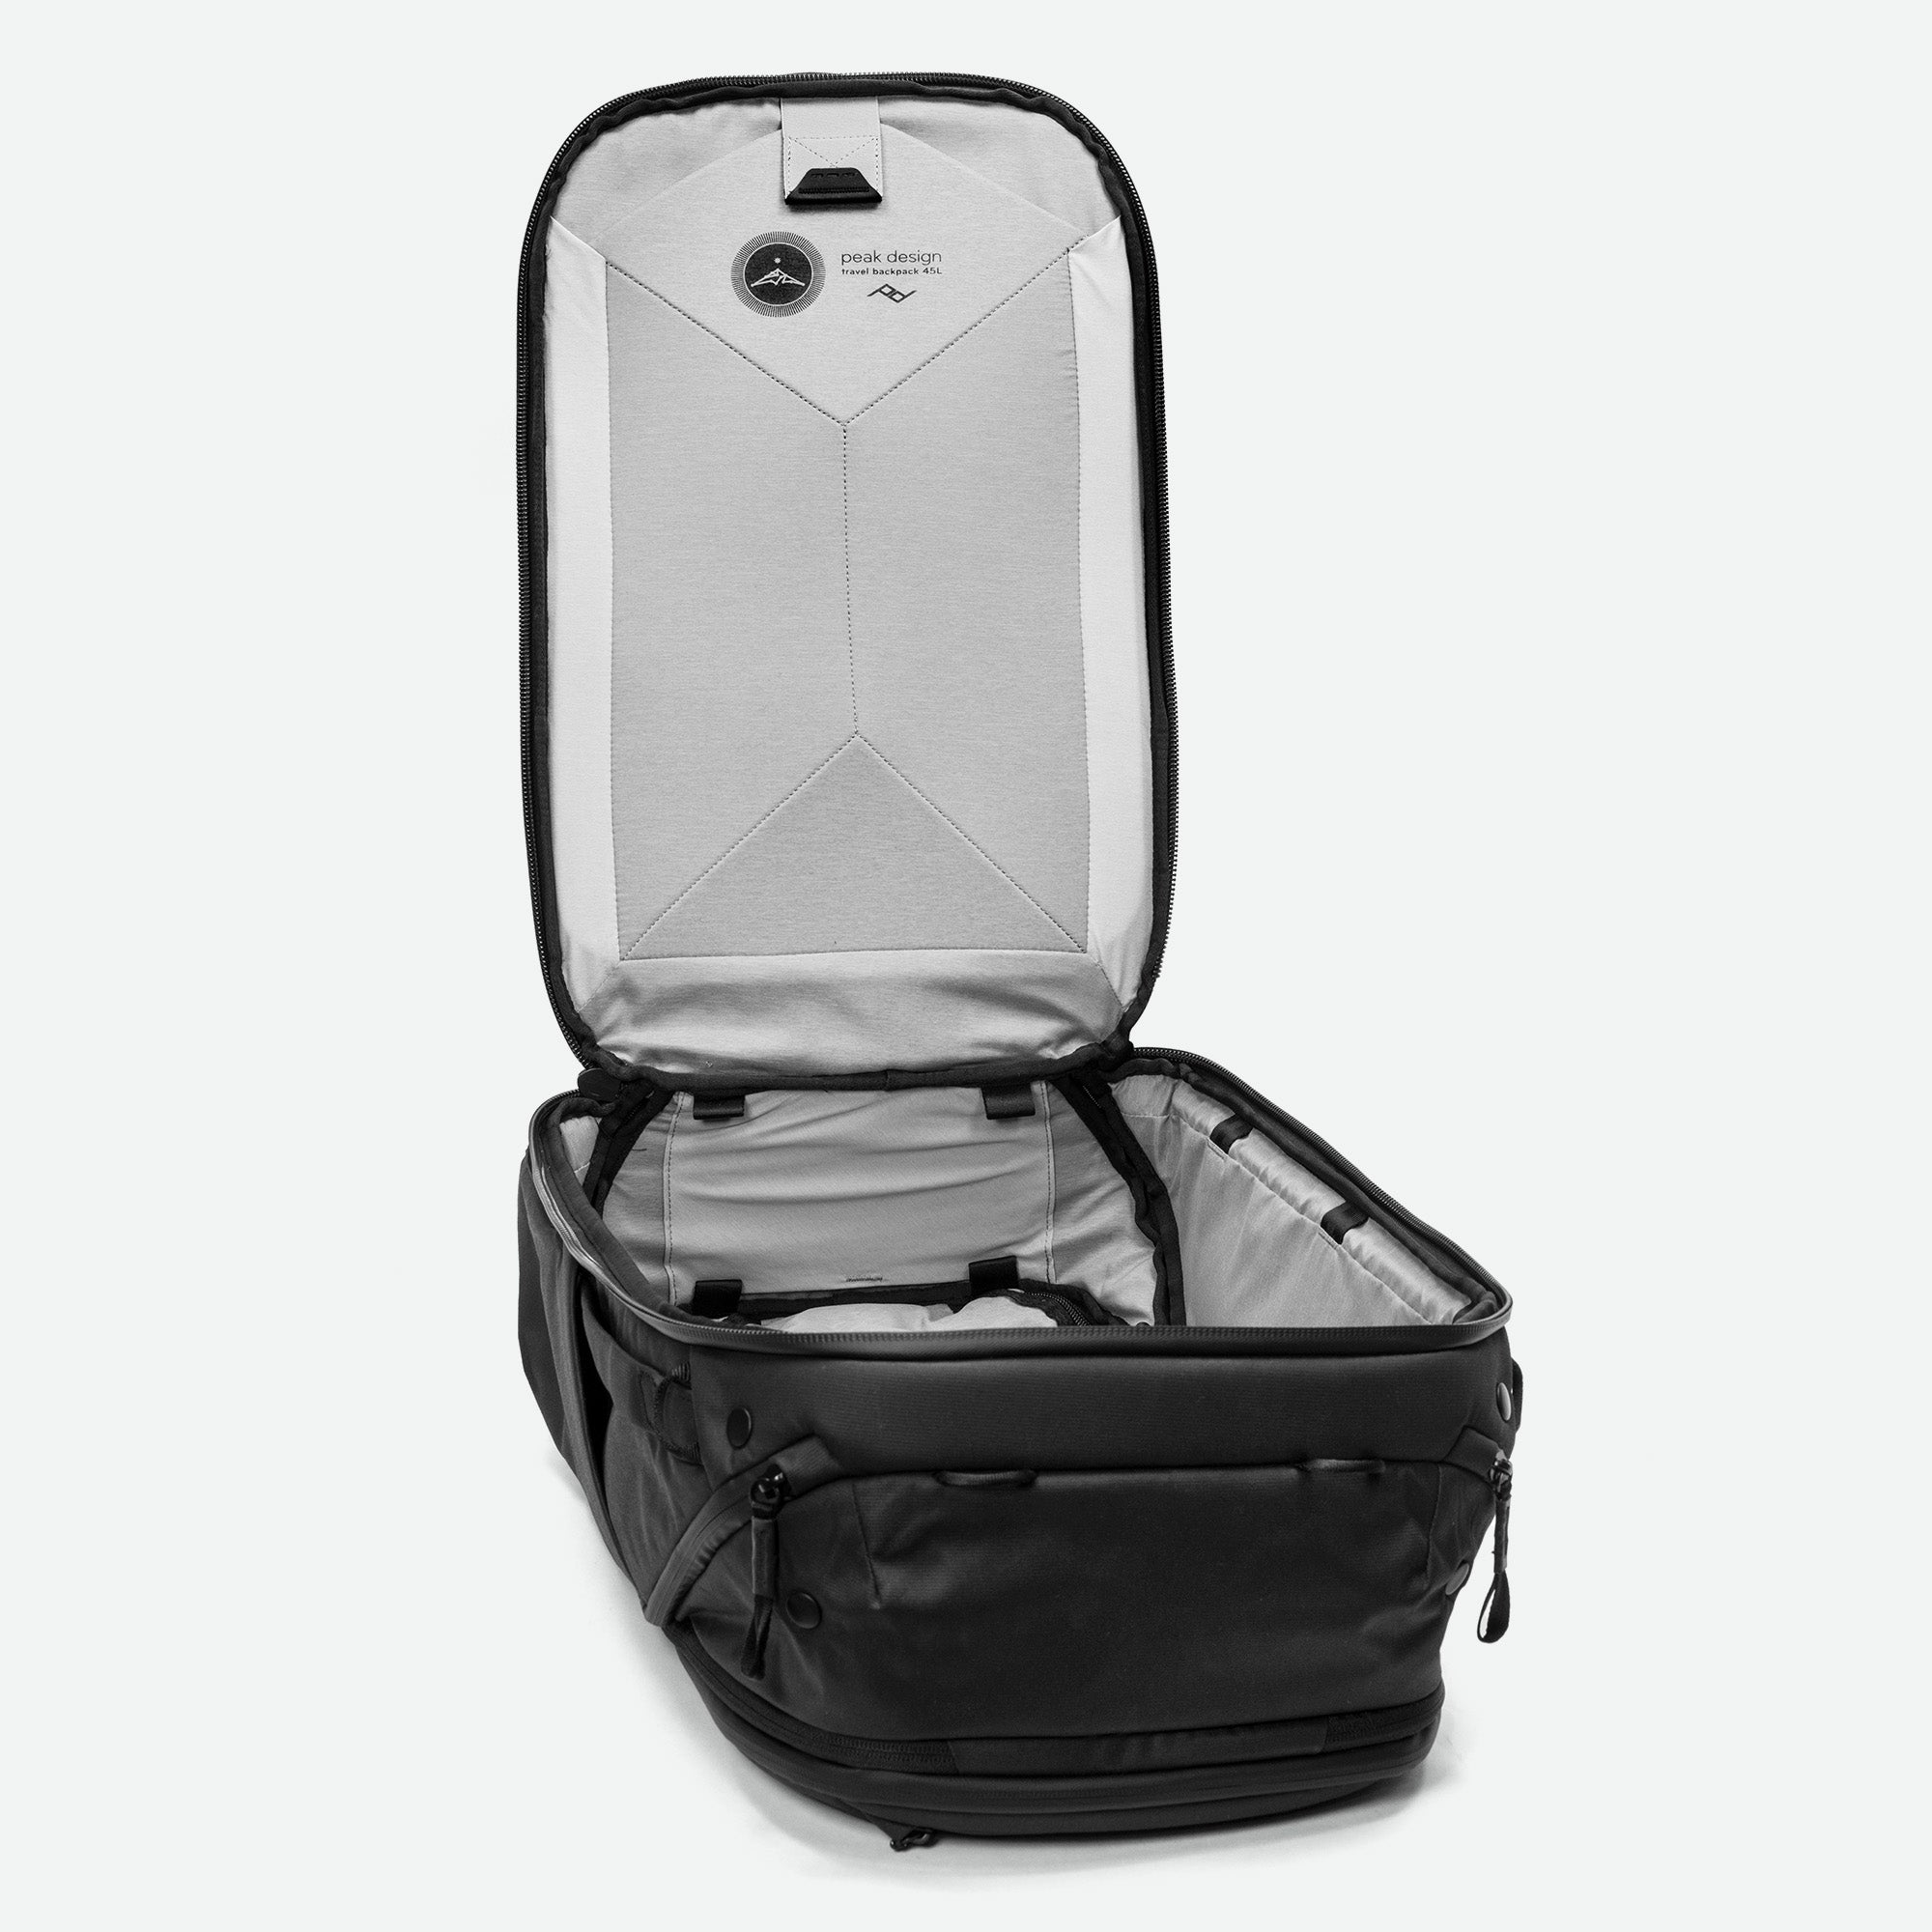 Peak Design rejsetaske 45 L sort hovedrumPeak Design Travel Backpack 45L Black